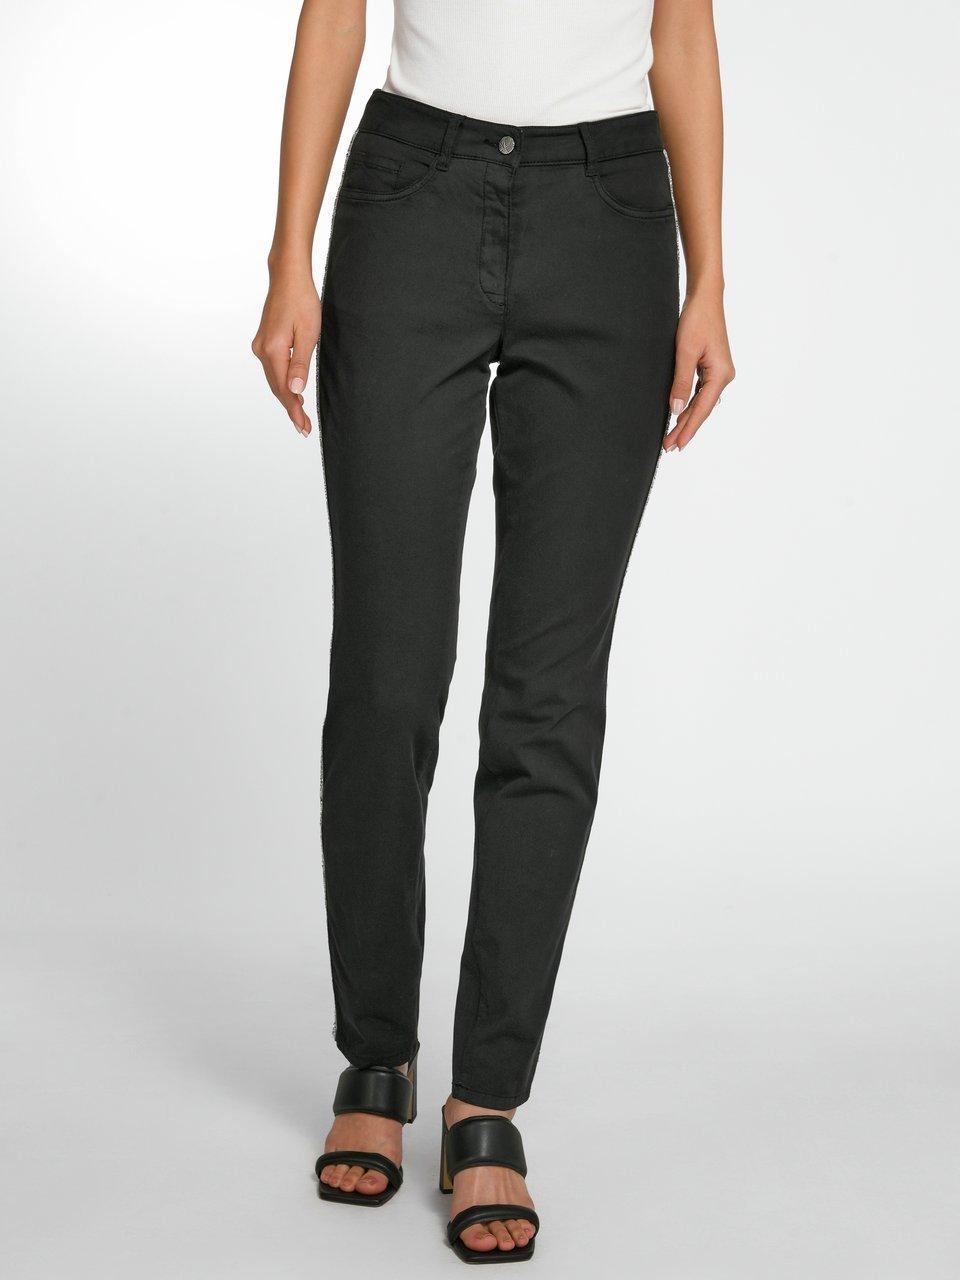 Det er billigt Sympatisere jubilæum BASLER - Jeans in 5-pocket style - black